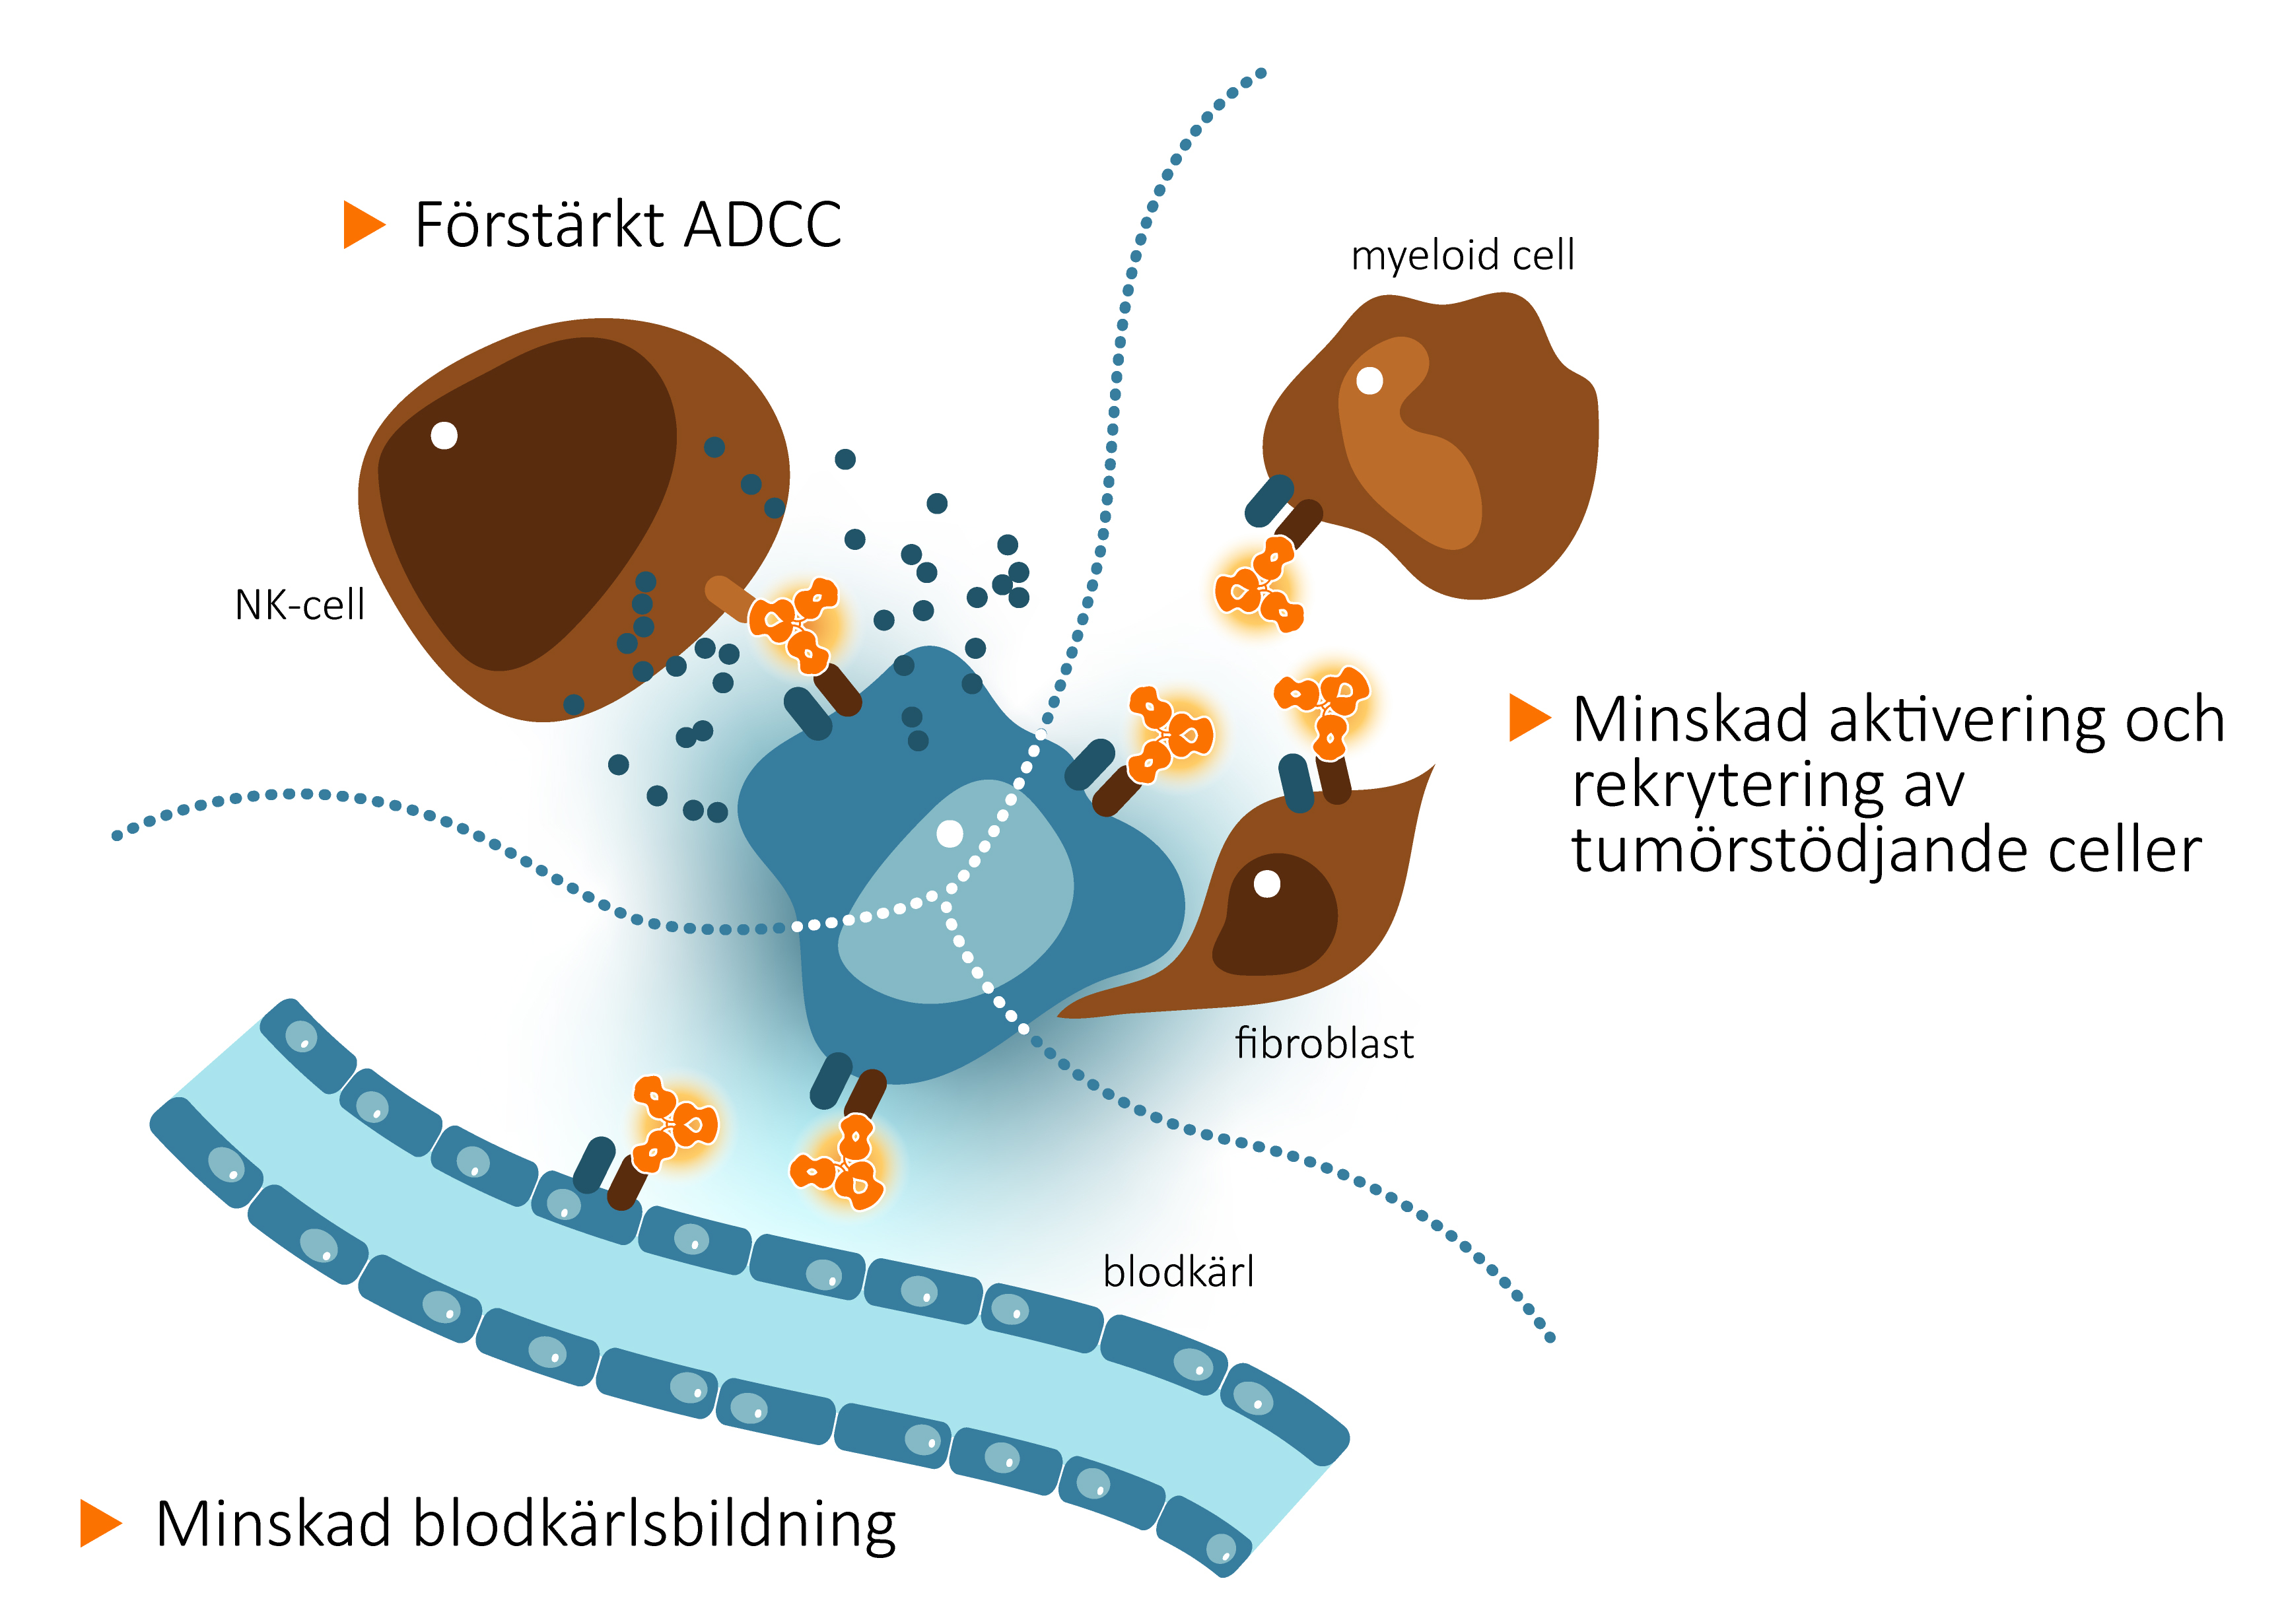 CAN04 motverkar tumörtillväxt genom flera mekanismer; CAN04 stimulerar NK-celler till avdödning av tumörceller genom ADCC och reducerar infiltrationen av tumörstödjande celler samt blodkärlsbildningen i tumören genom blockering av IL-1-alfa- och IL-1-beta-signalering via IL1RAP.